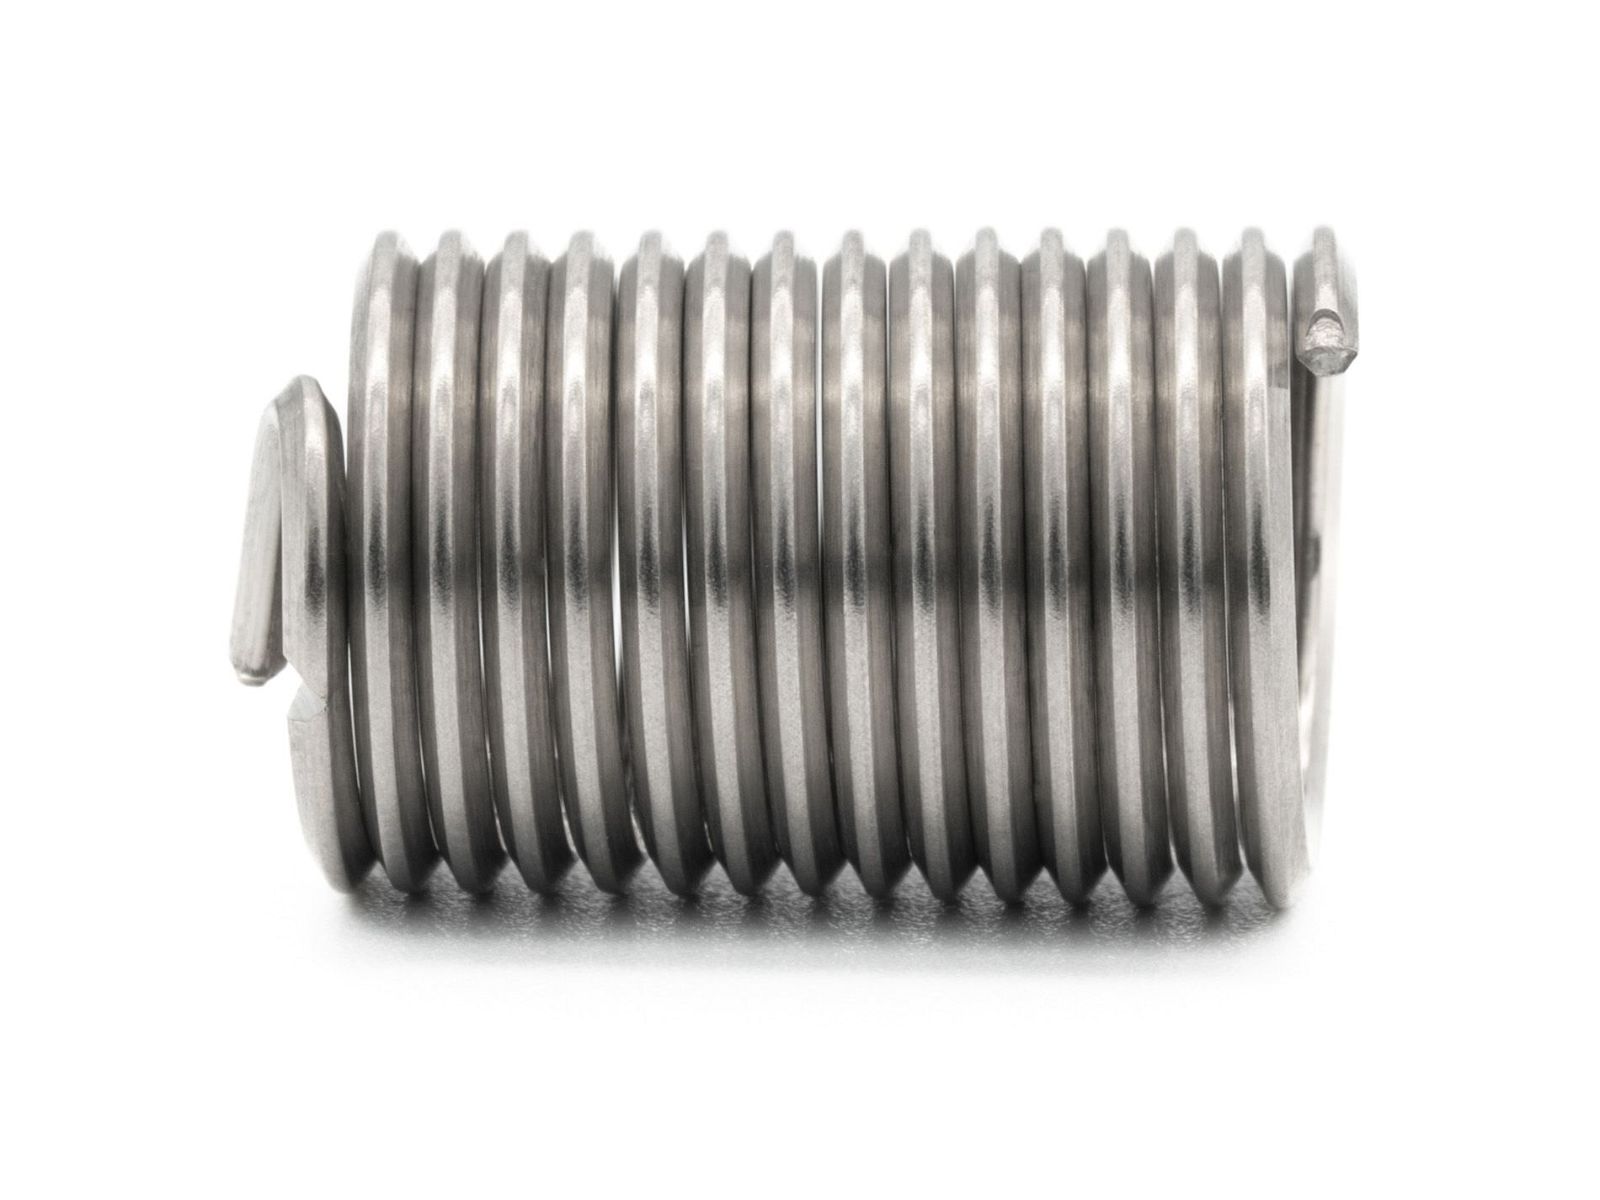 BaerCoil Wire Thread Inserts UNF No. 6 x 40 - 2.5 D (8.76 mm) -100 pcs.